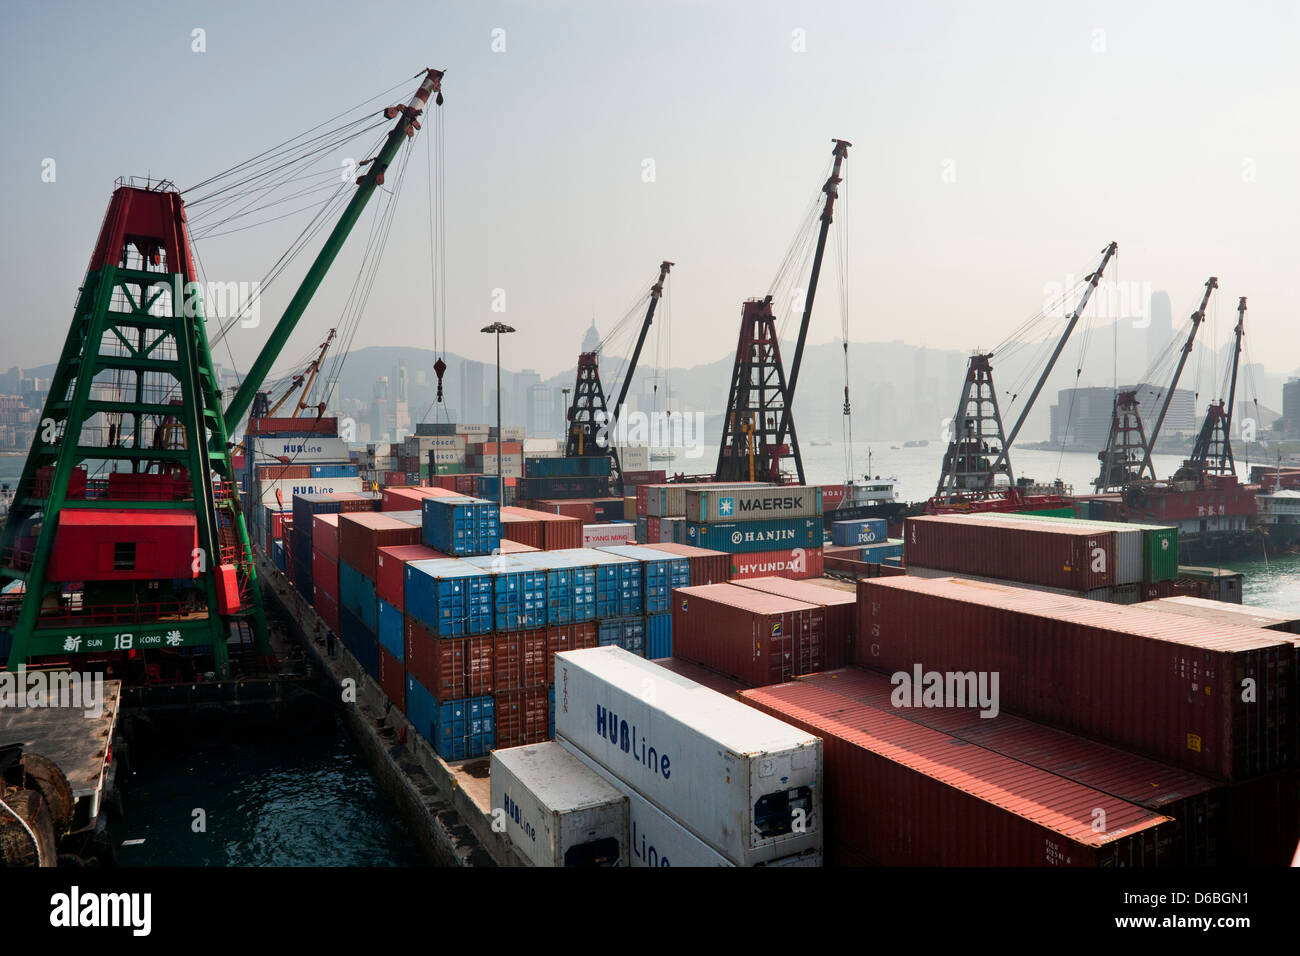 China, Hong Kong, Victoria Harbour, container handling facility at Hung Hom Stock Photo